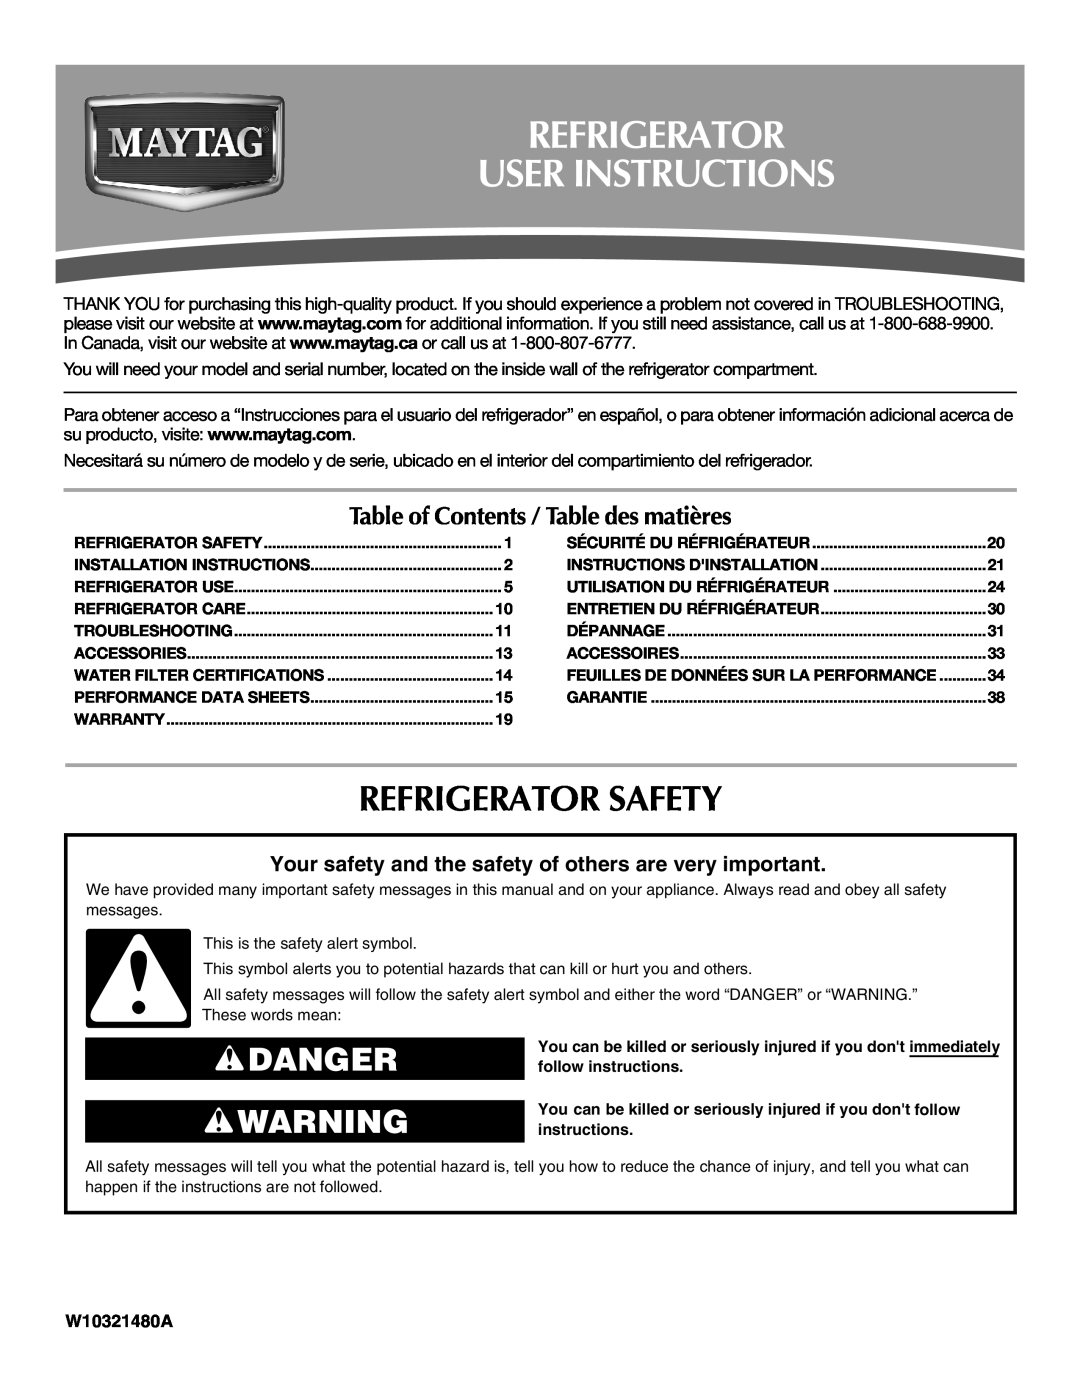 Maytag W10321480A installation instructions Refrigerator User Instructions, Refrigerator Safety, Danger 